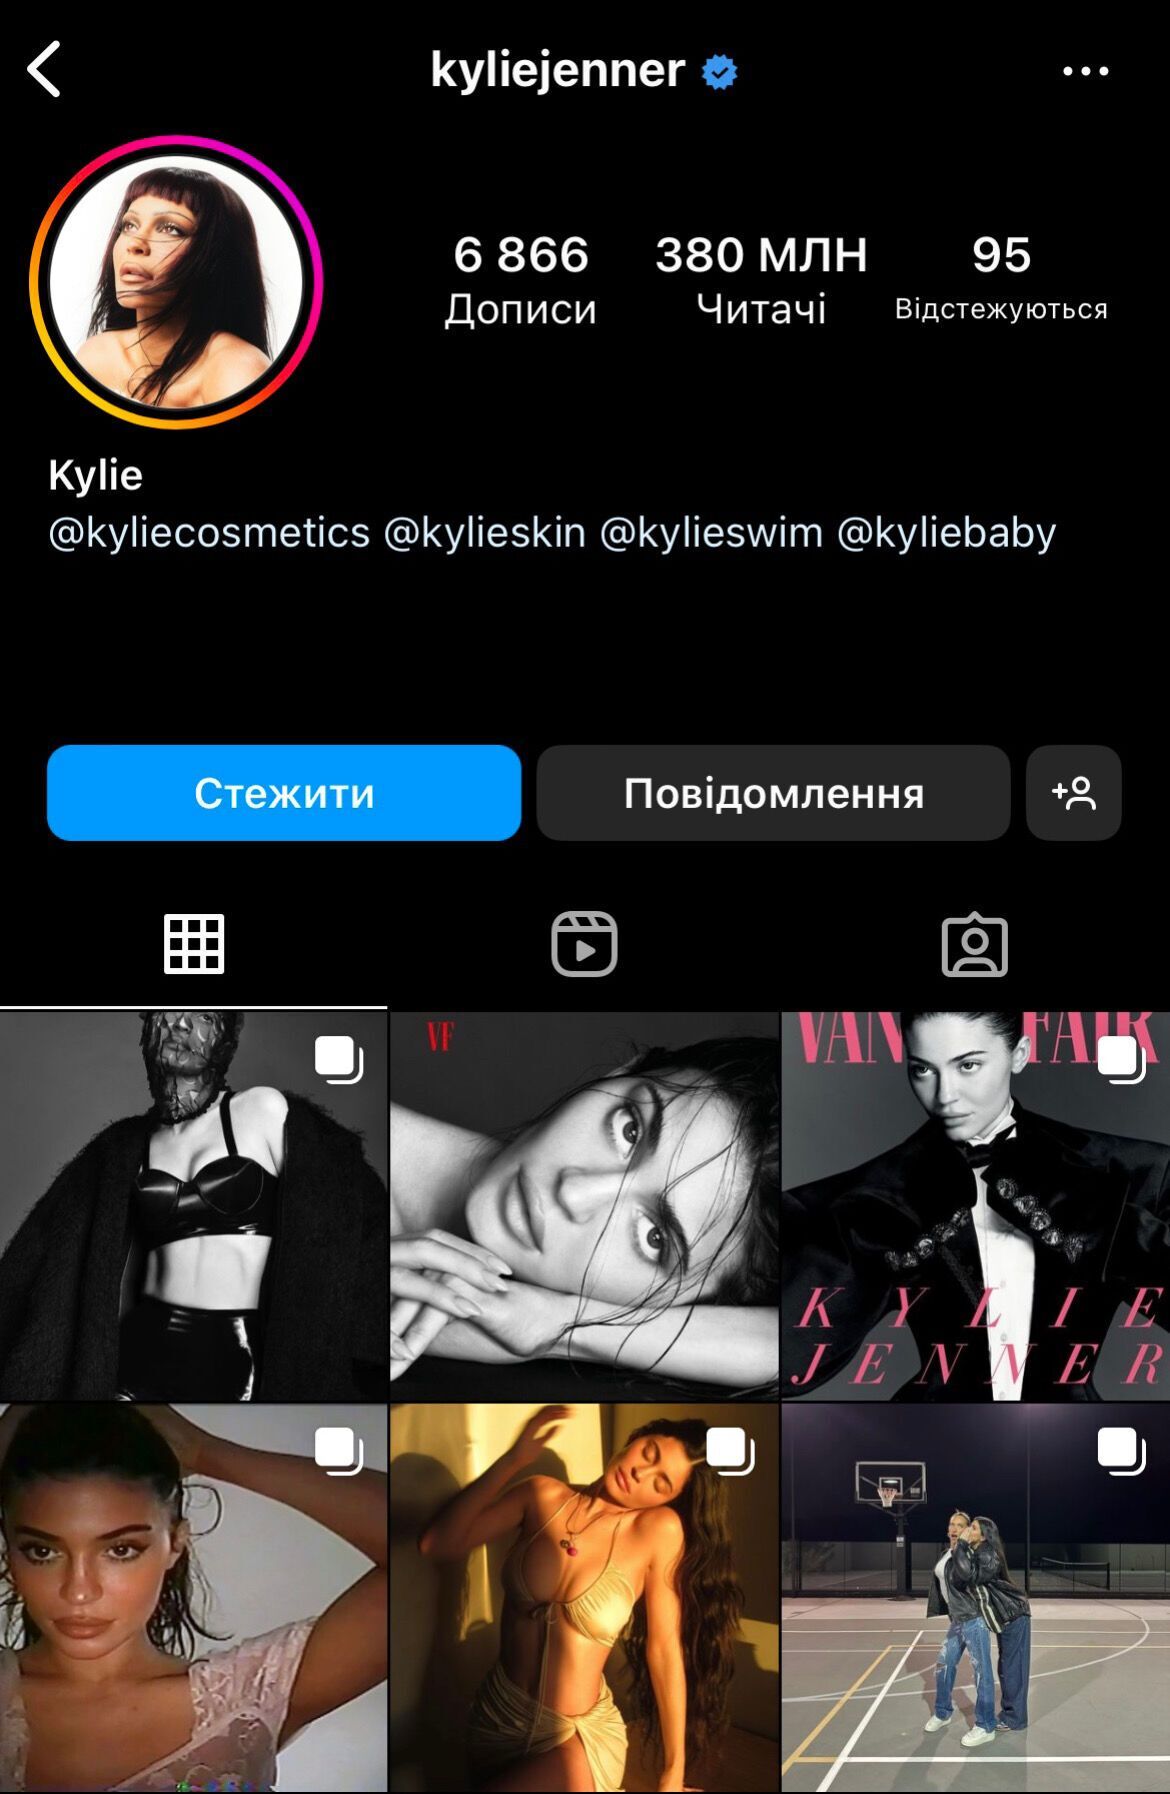 Обогнала Кайли Дженнер: названа самая популярная женщина в Instagram по количеству подписчиков